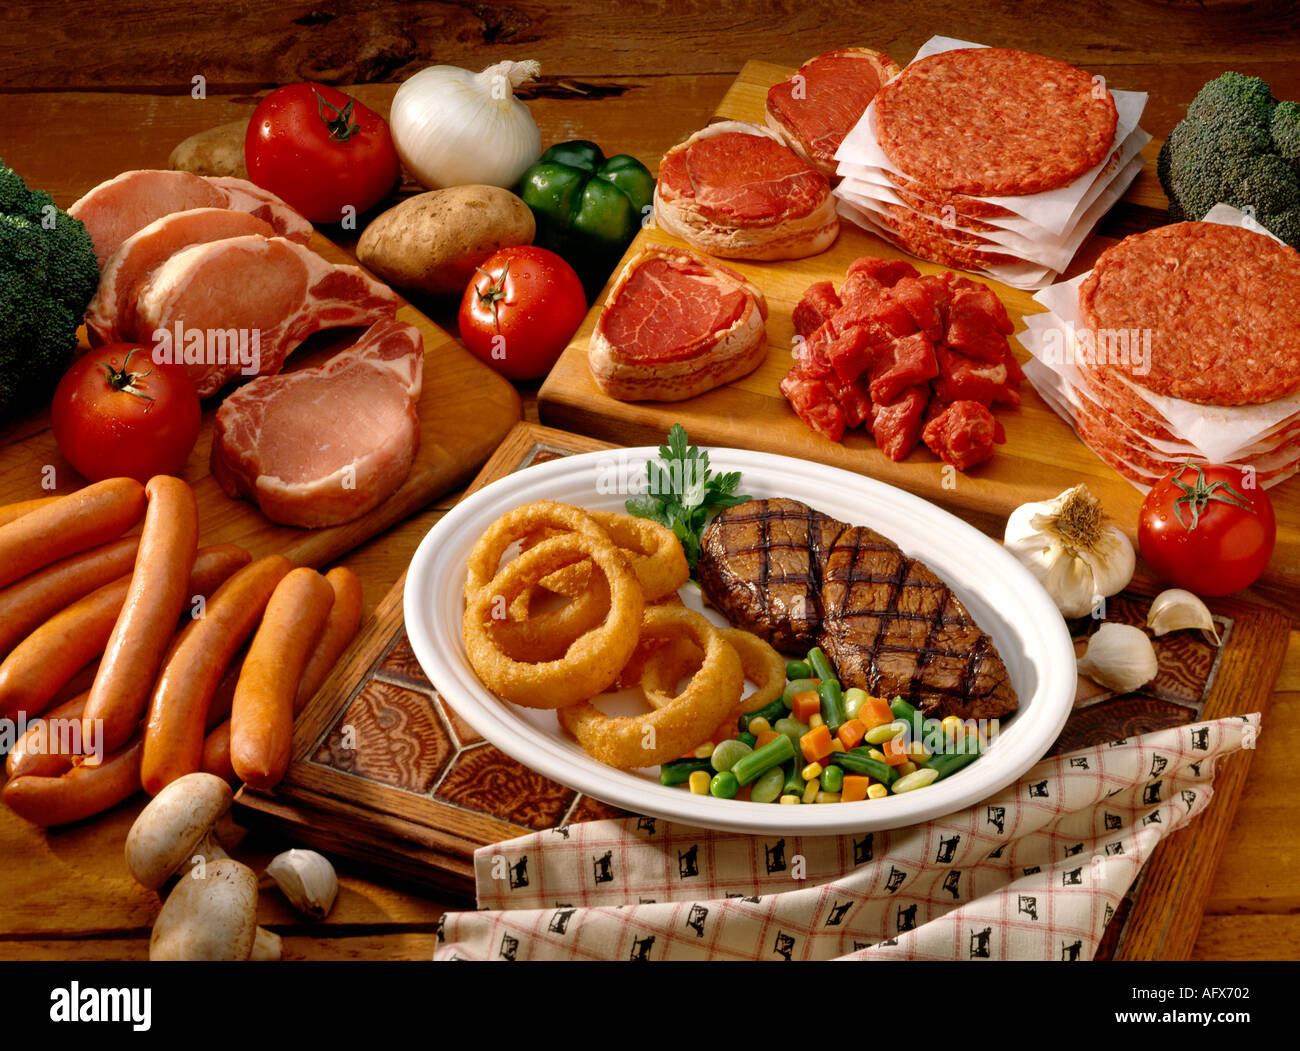 Grande diffusion ou de viande, boeuf, porc, steak nourriture Banque D'Images